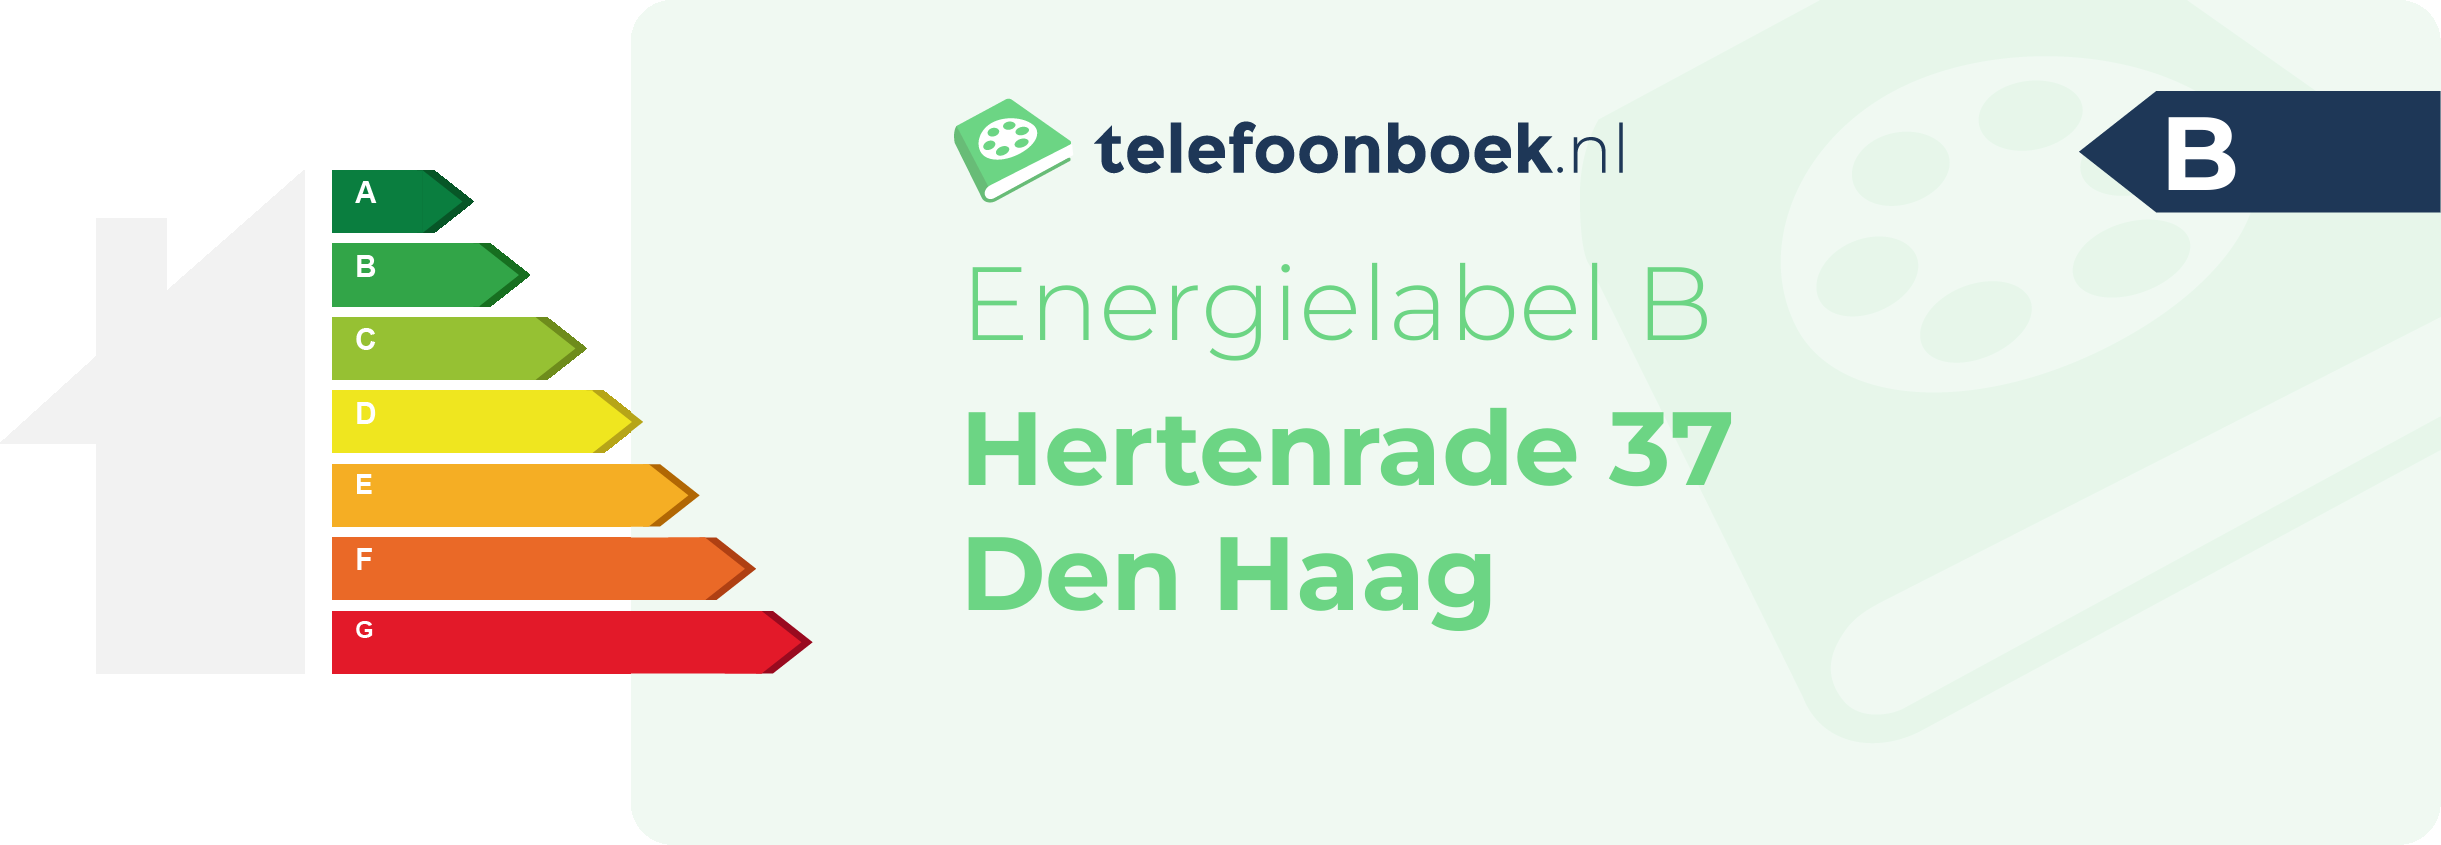 Energielabel Hertenrade 37 Den Haag